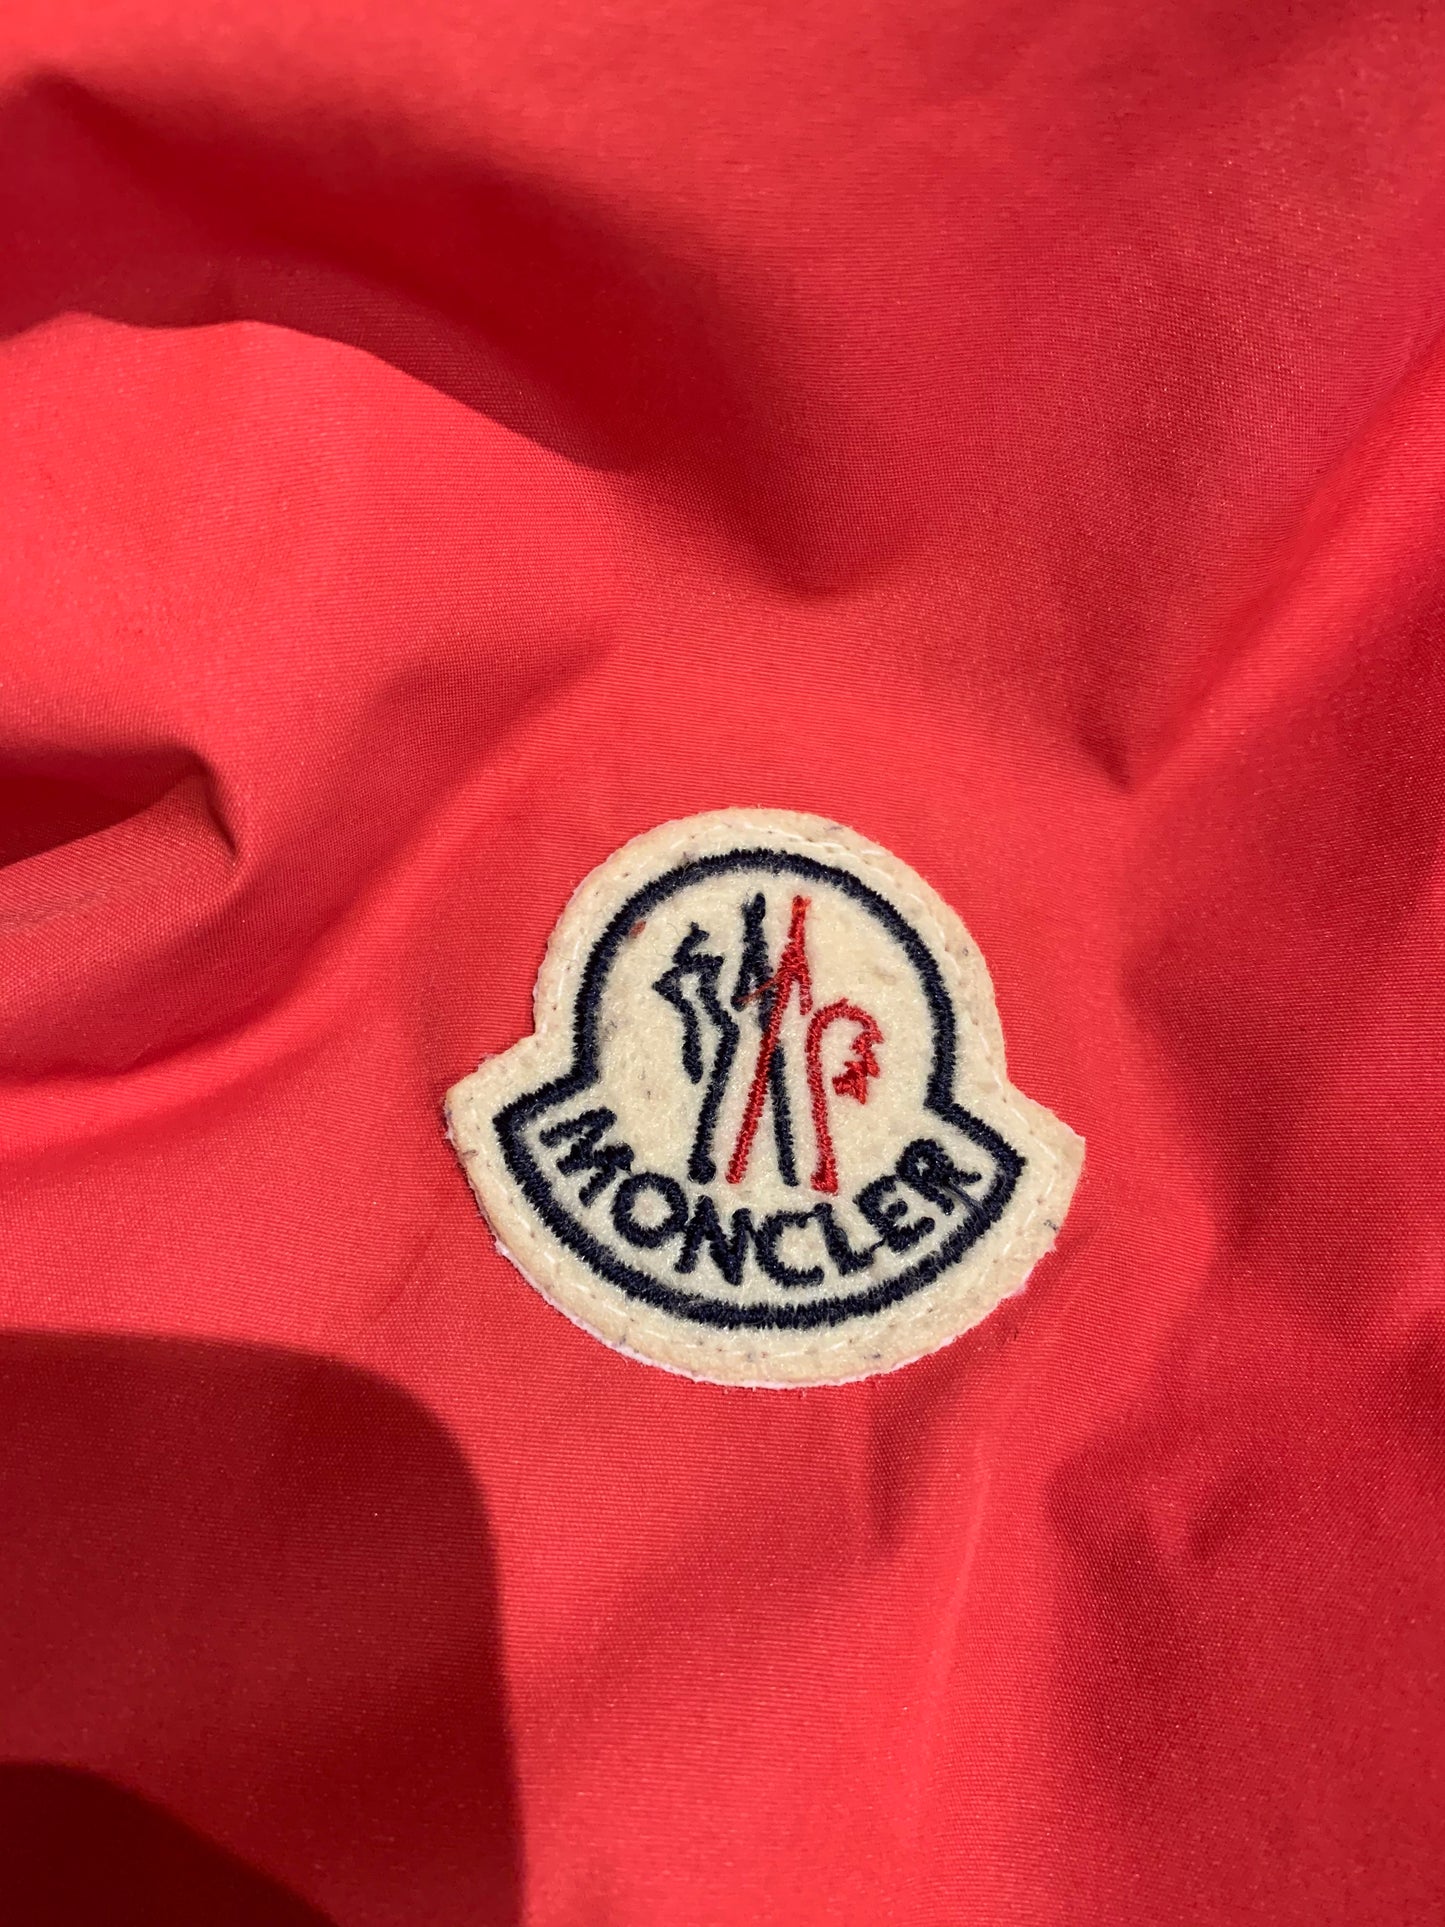 Vintage Moncler Grenoble Red Ski Jacket With Fur